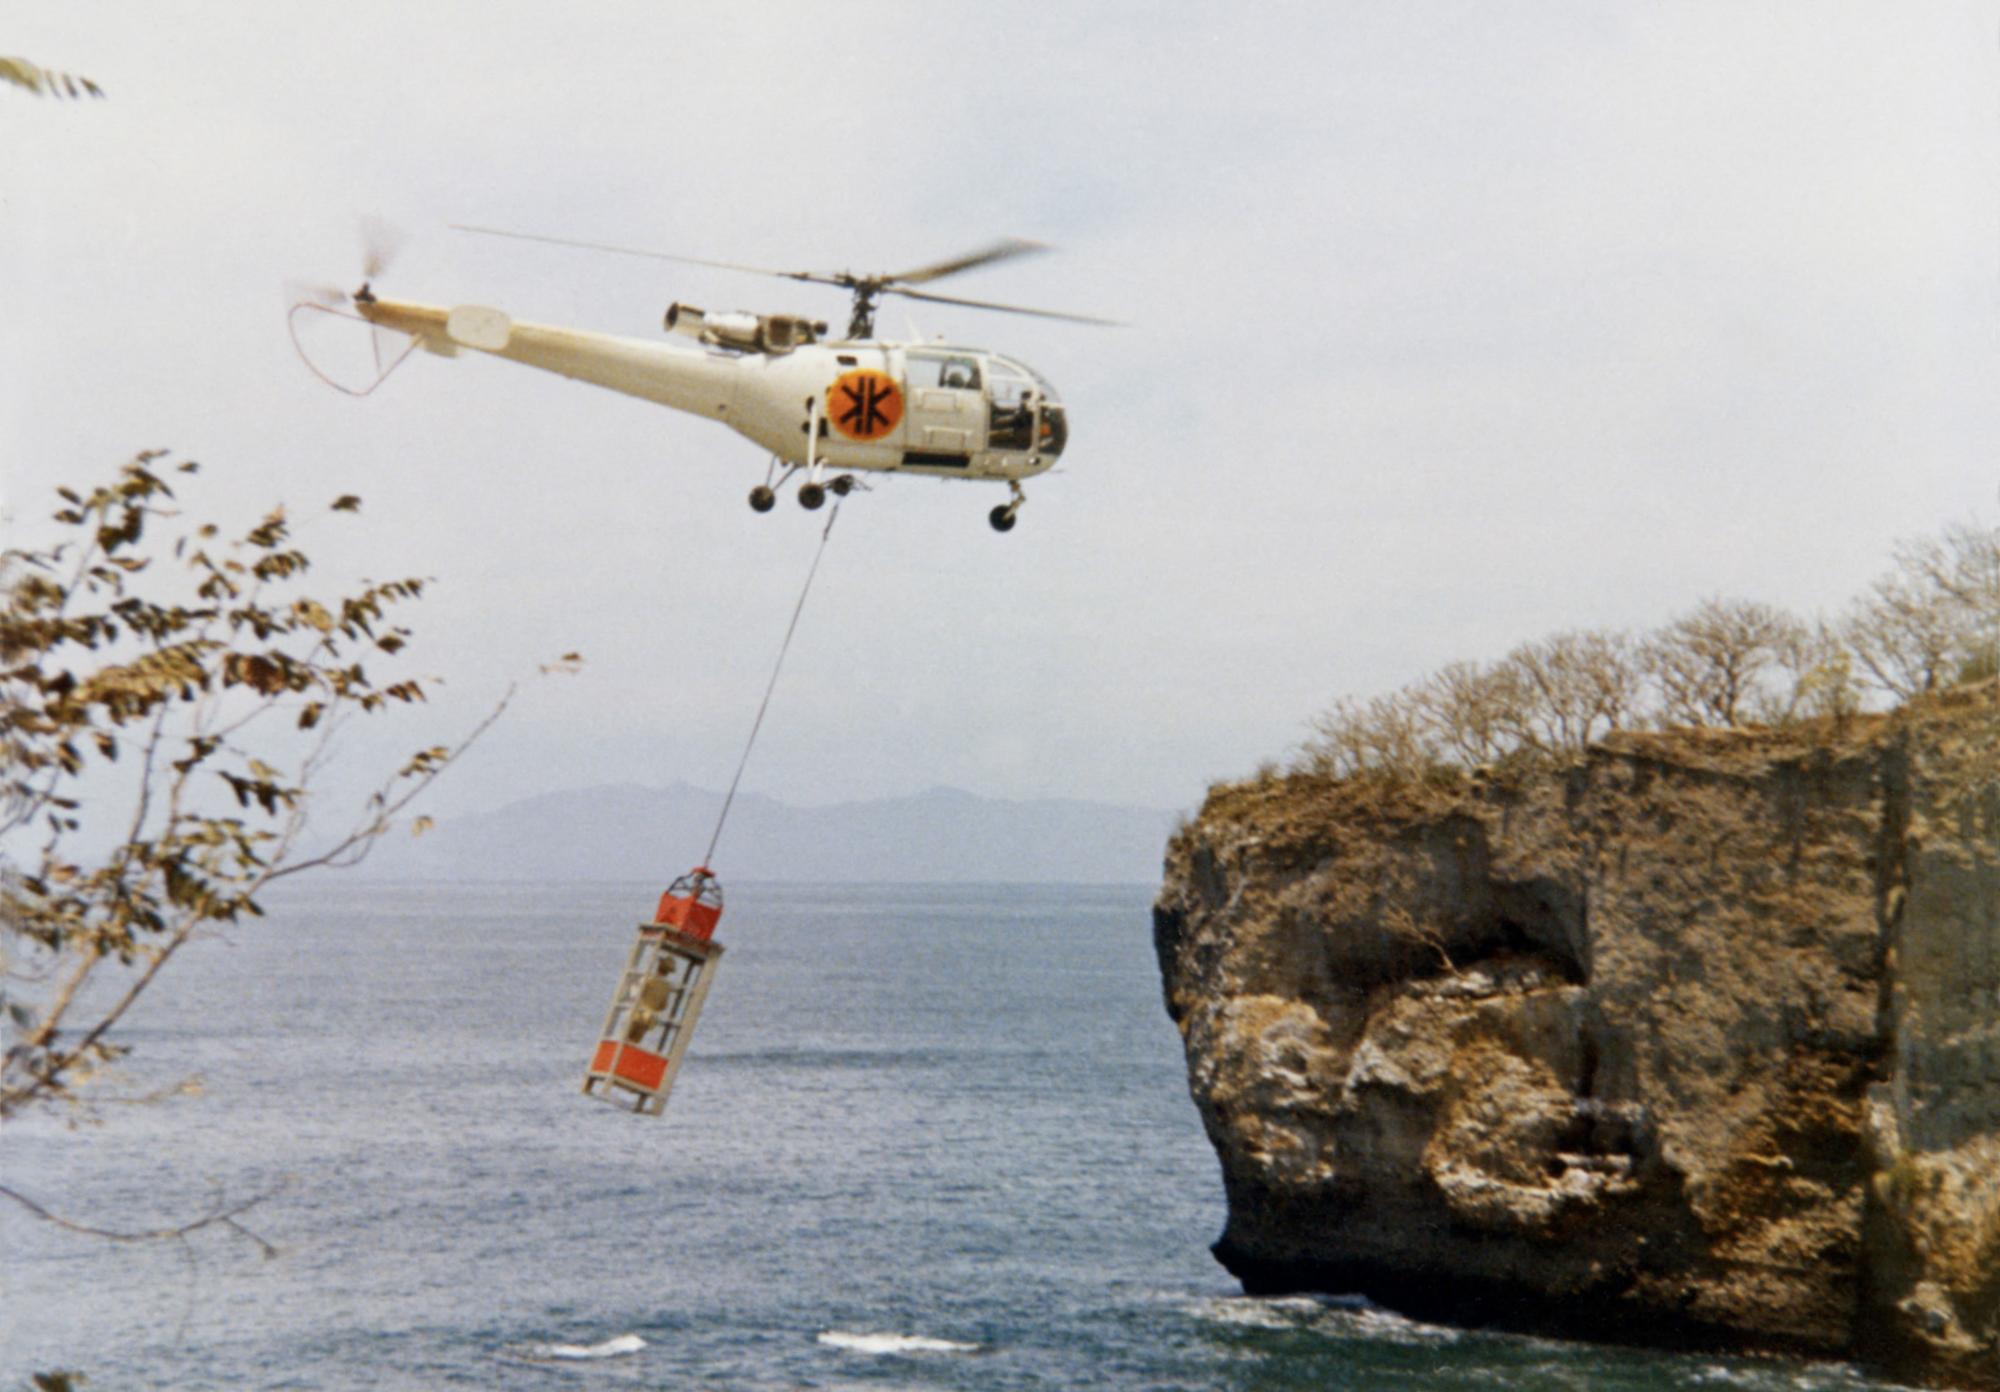 La scène de la cabine de téléphone soulevée par un hélicoptère au début du film "Le Magnifique".